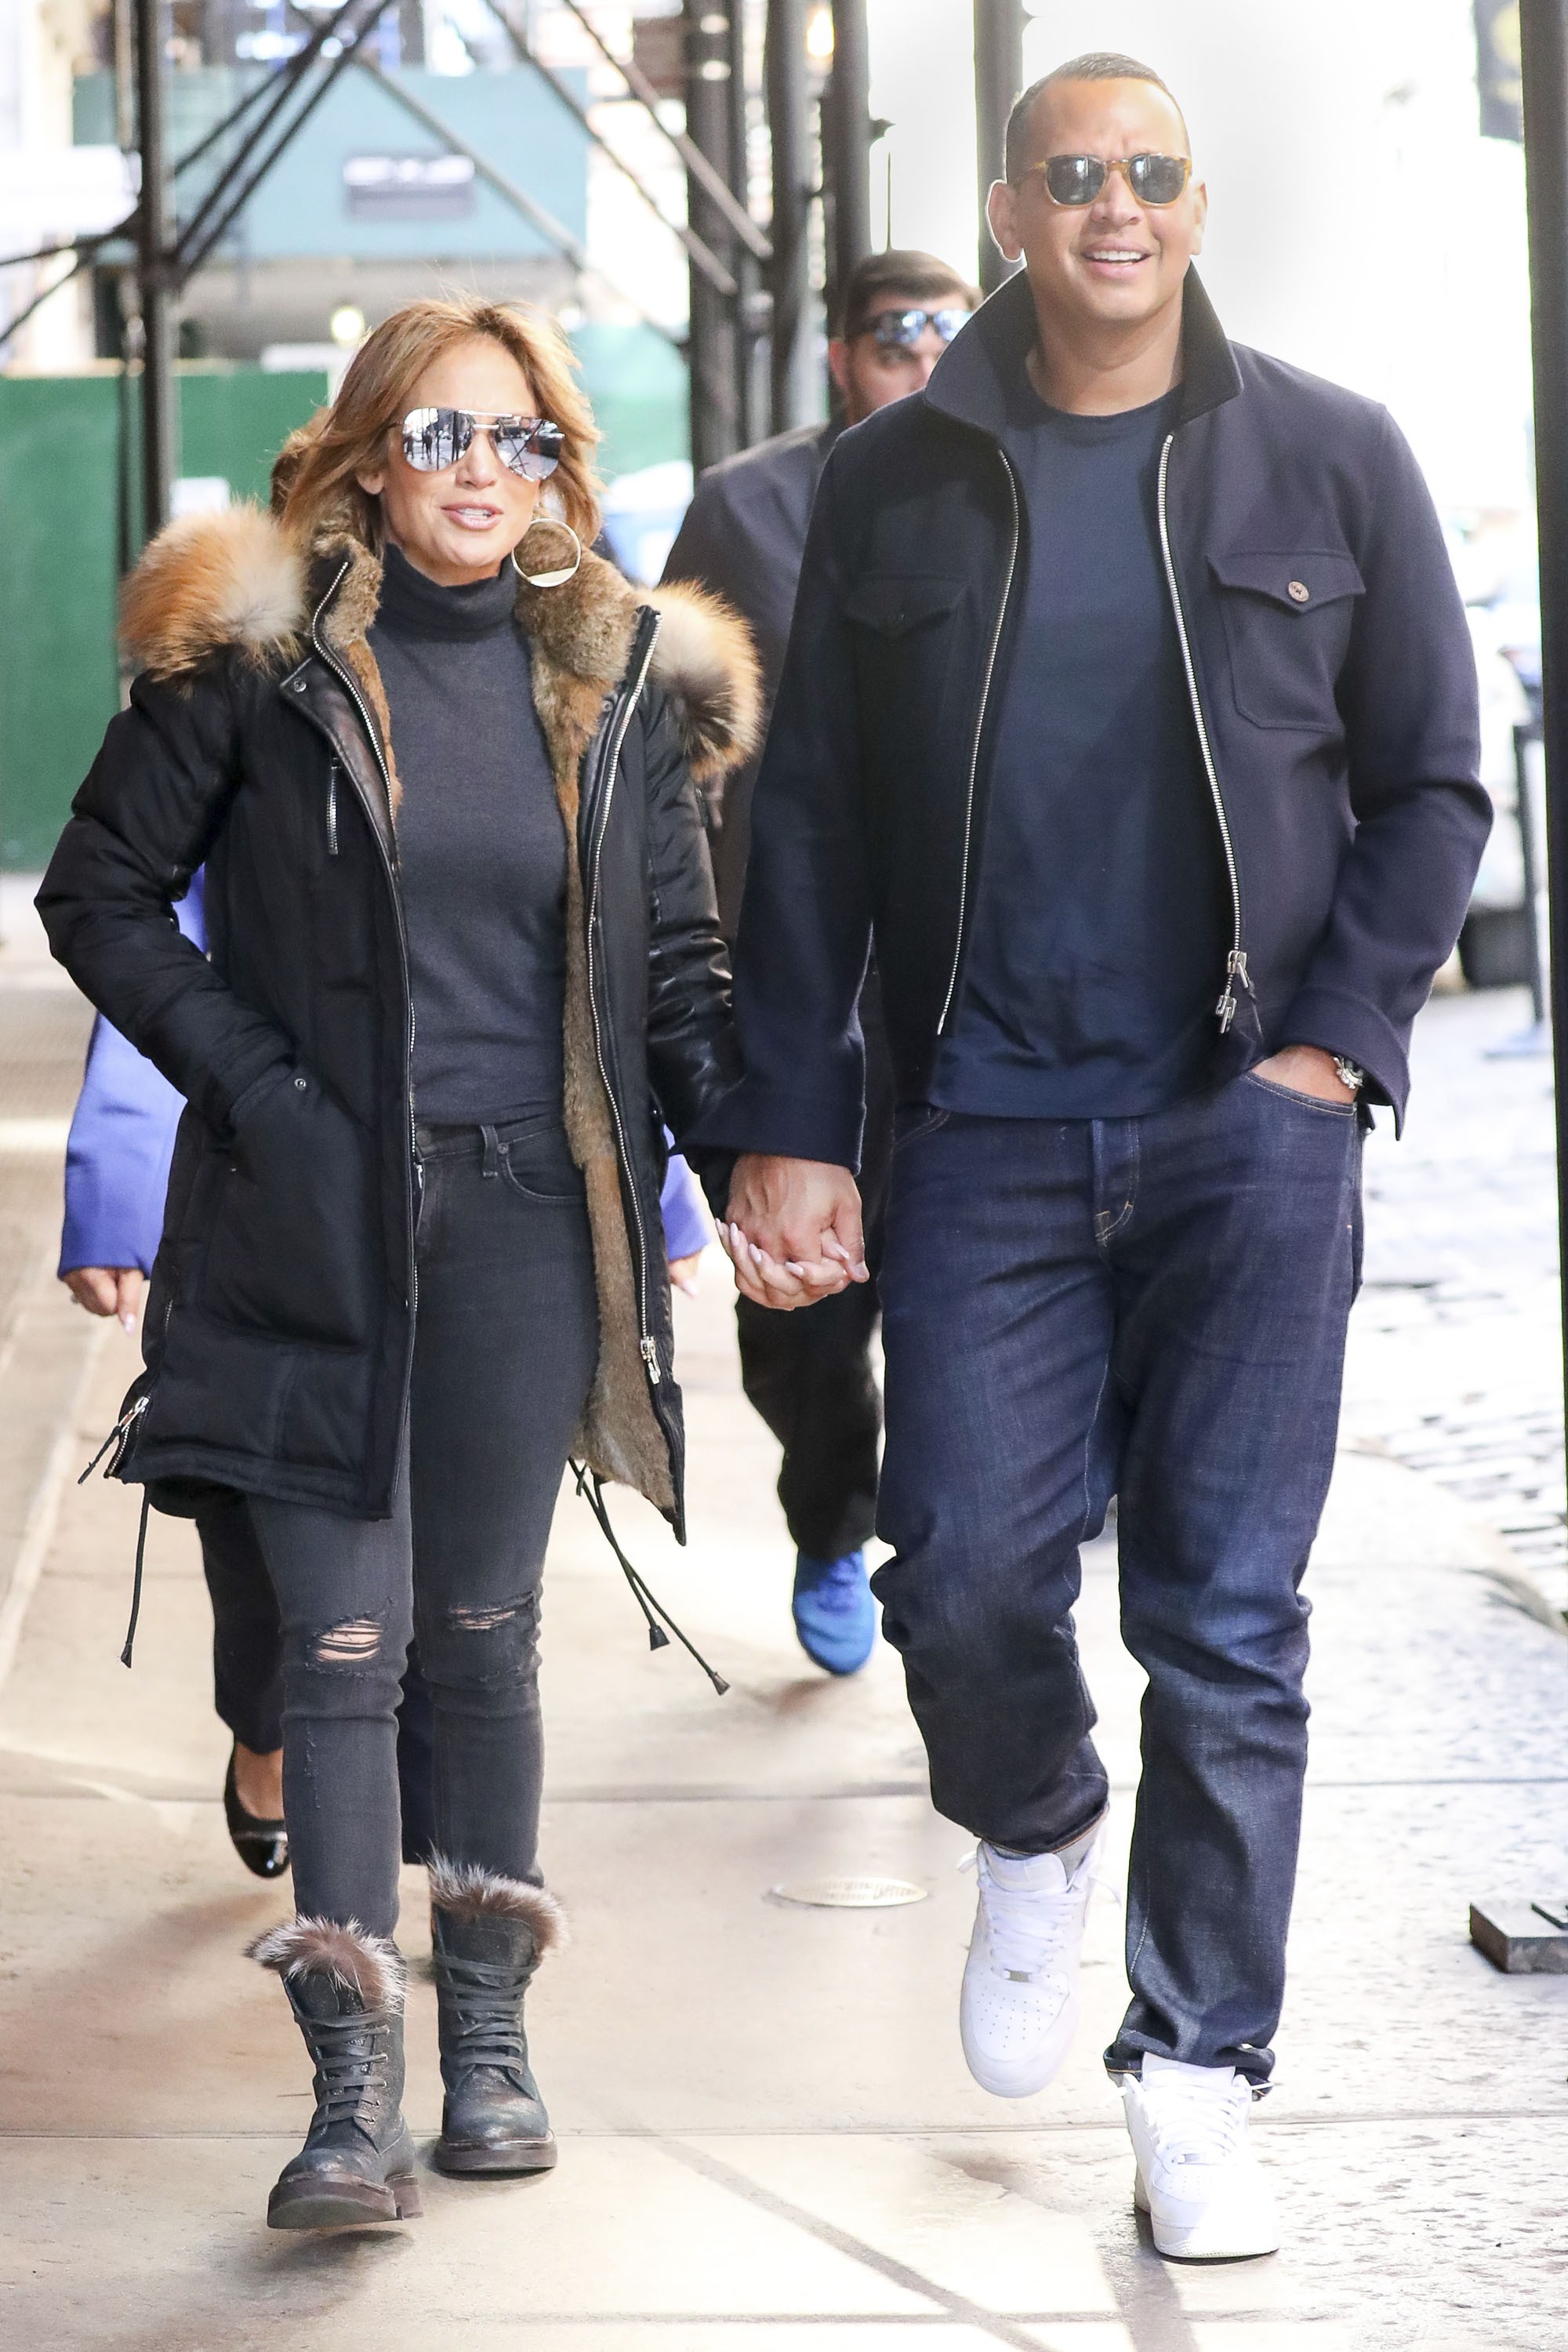 Cách Jennifer Lopez cùng bồ trẻ chứng minh tình yêu: Diện đồ tông xuyệt tông với nhau bất cứ khi nào có thể - Ảnh 7.